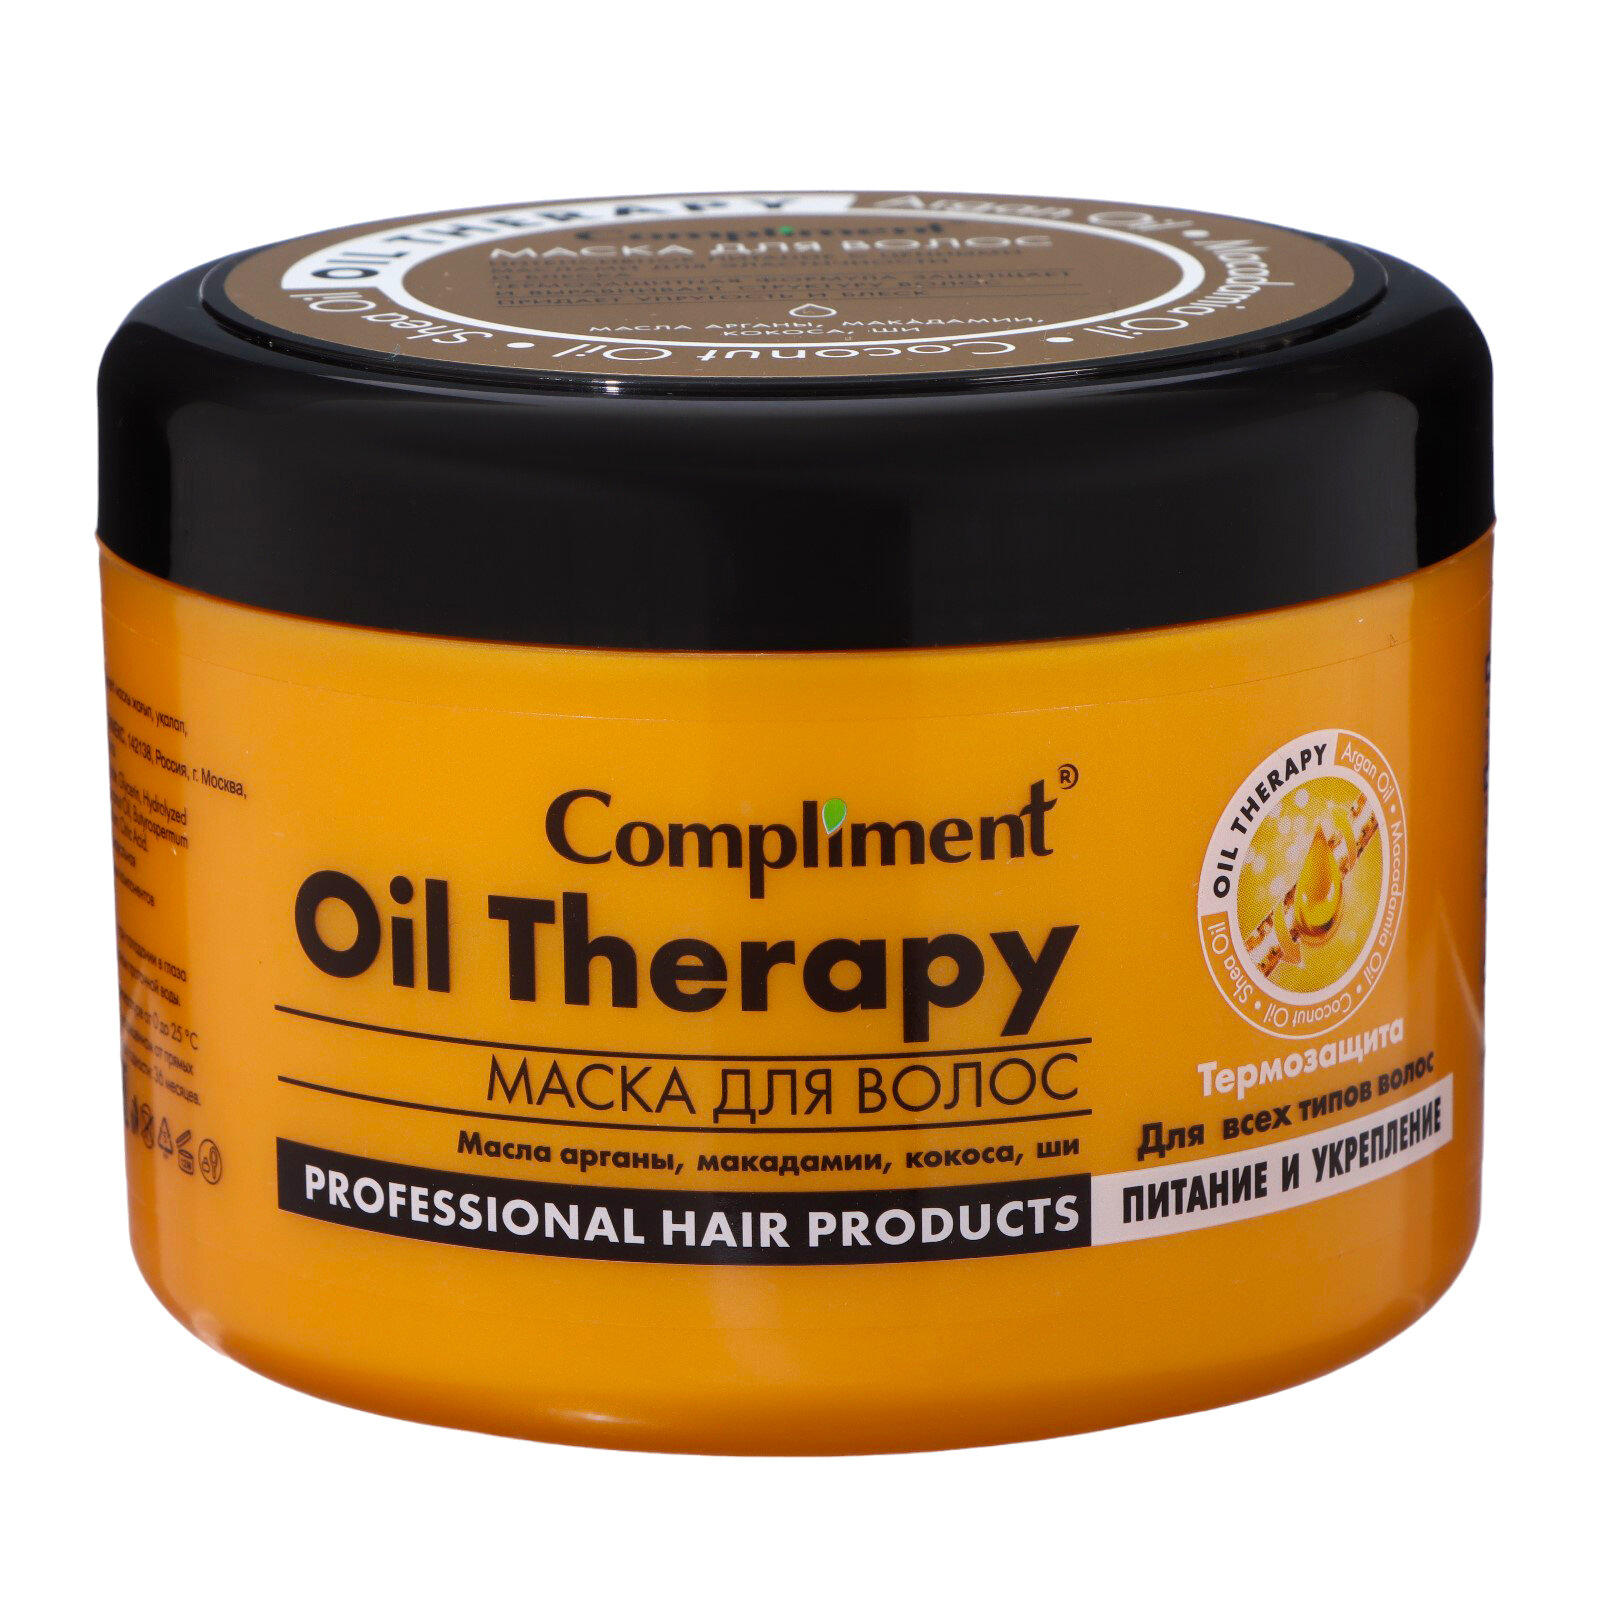 Маска для волос Oil Therapy «Питание и укрепление» для всех типов волос, 500 мл